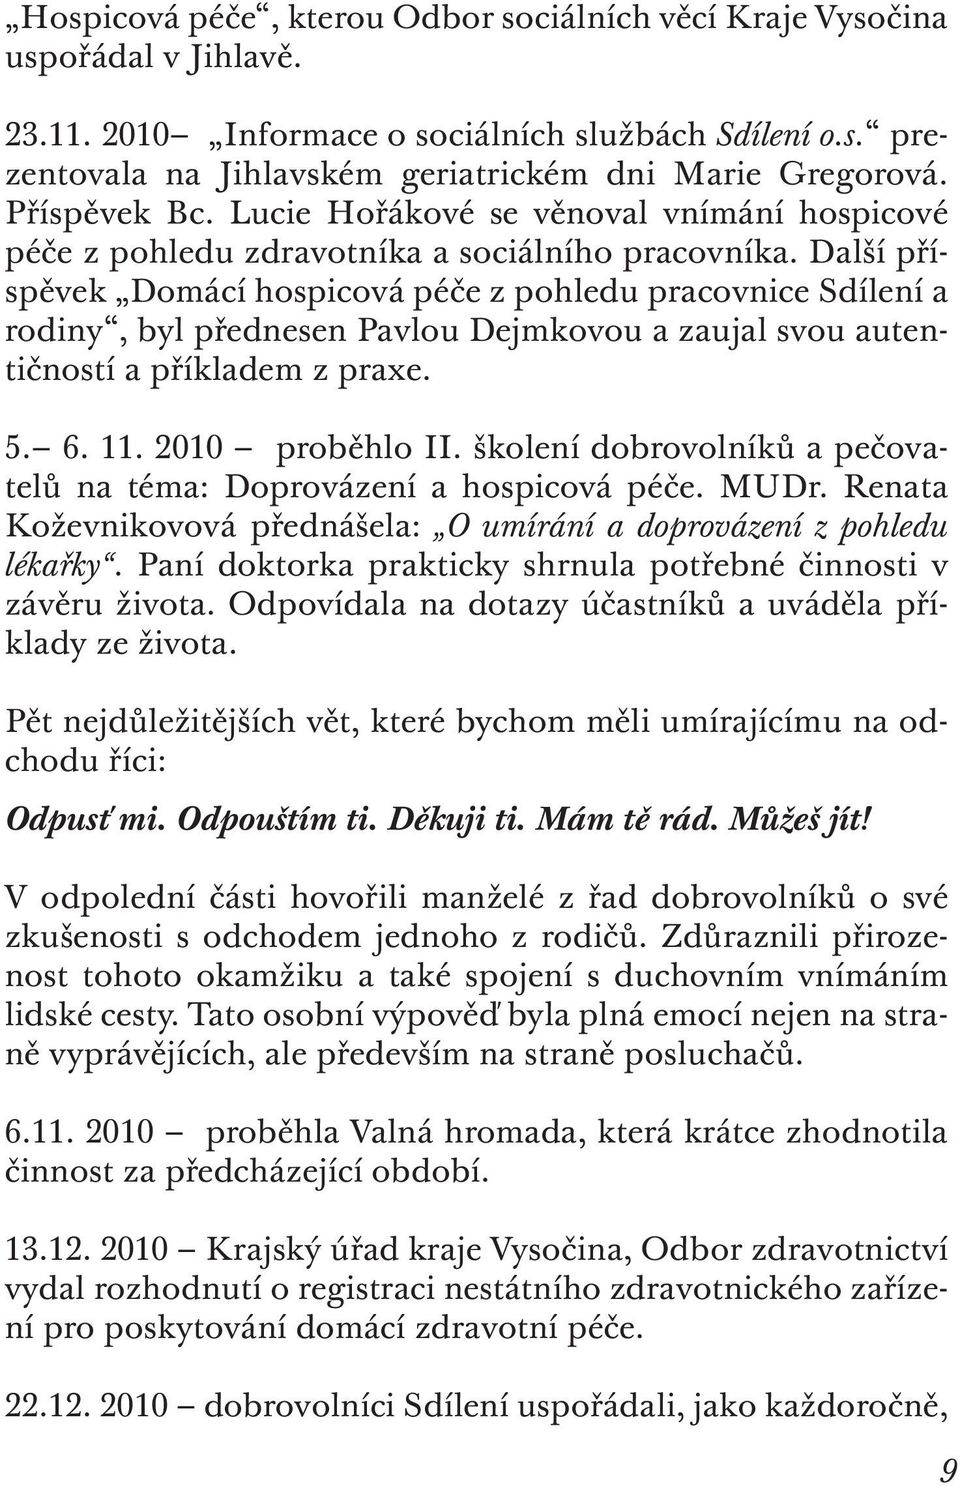 Další příspěvek Domácí hospicová péče z pohledu pracovnice Sdílení a rodiny, byl přednesen Pavlou Dejmkovou a zaujal svou autentičností a příkladem z praxe. 5. 6. 11. 2010 proběhlo II.